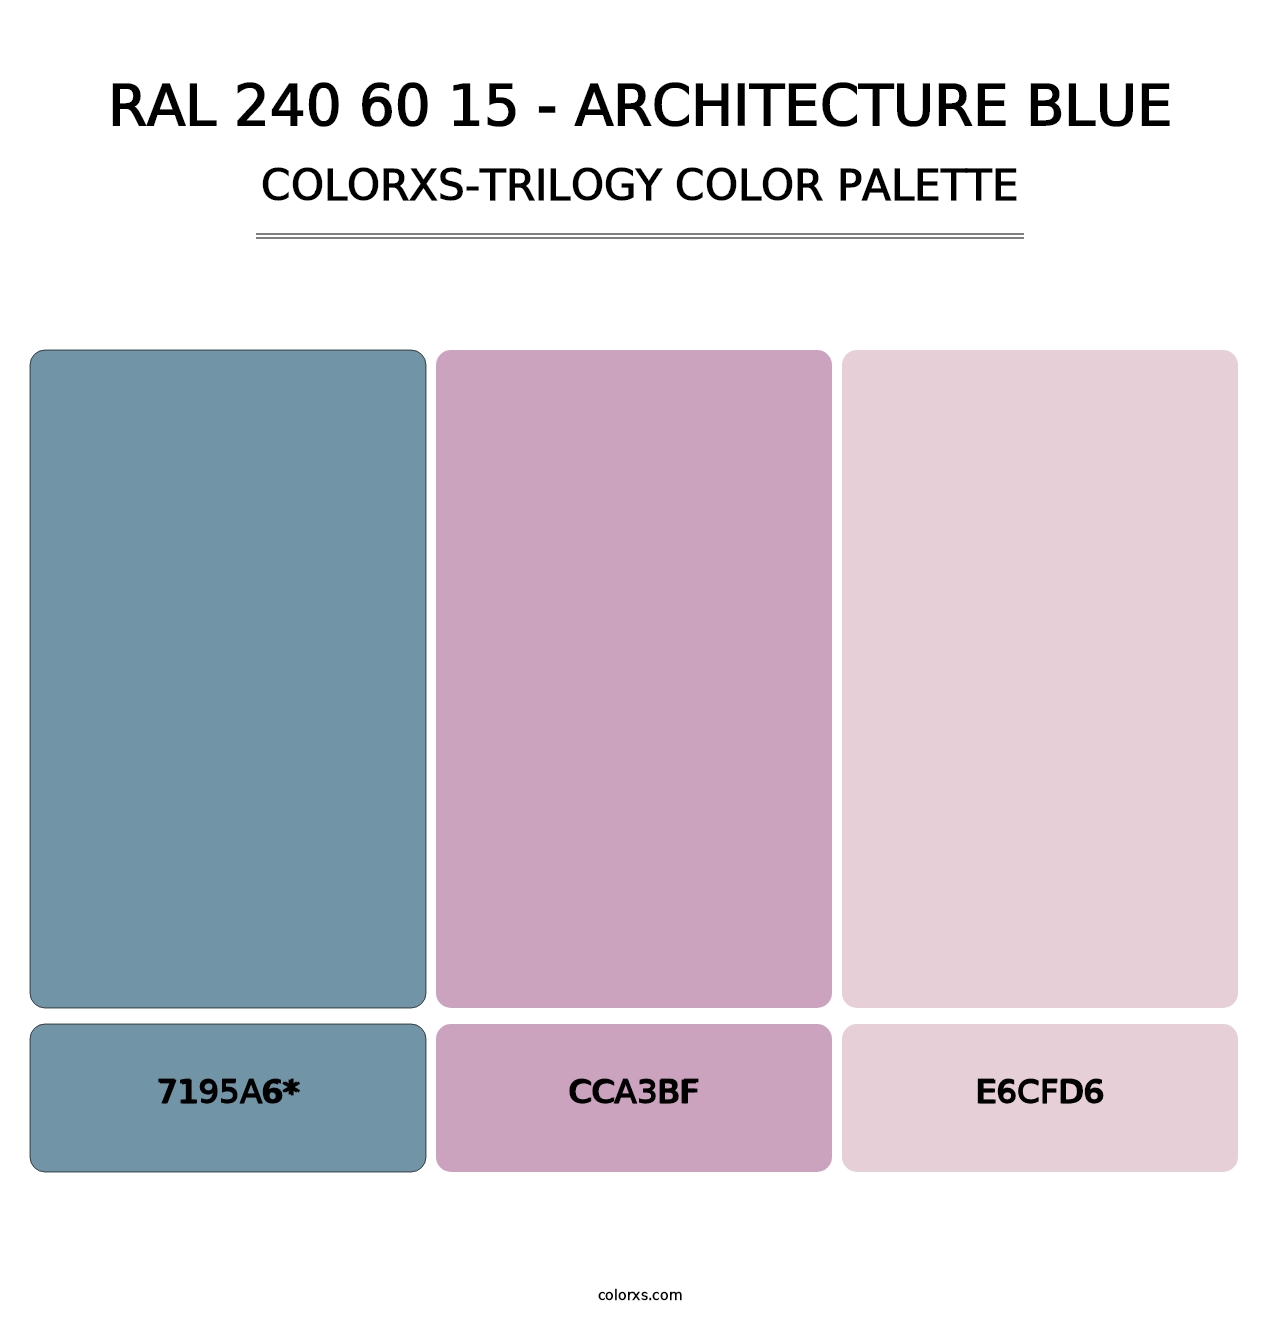 RAL 240 60 15 - Architecture Blue - Colorxs Trilogy Palette